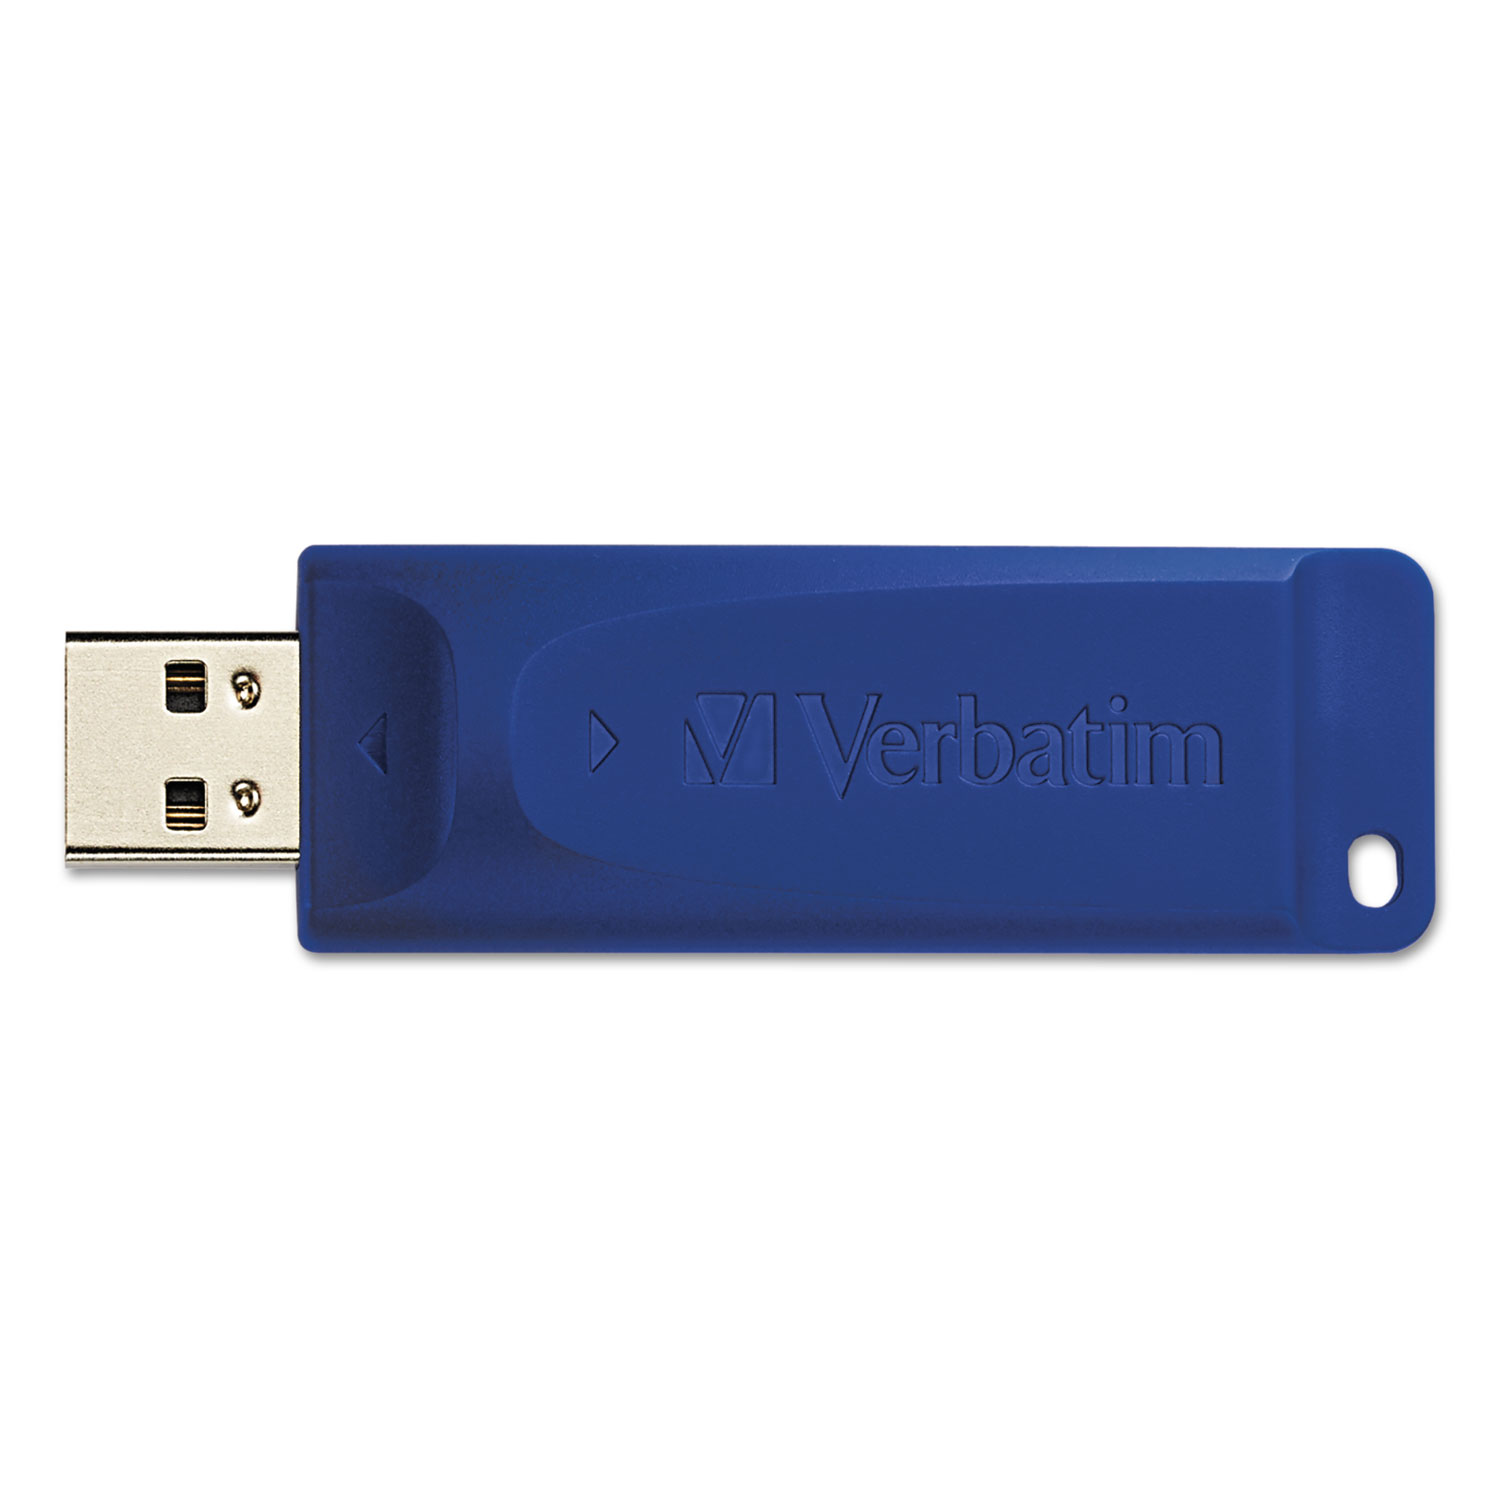 Classic USB 2.0 Flash Drive, 8GB, Blue